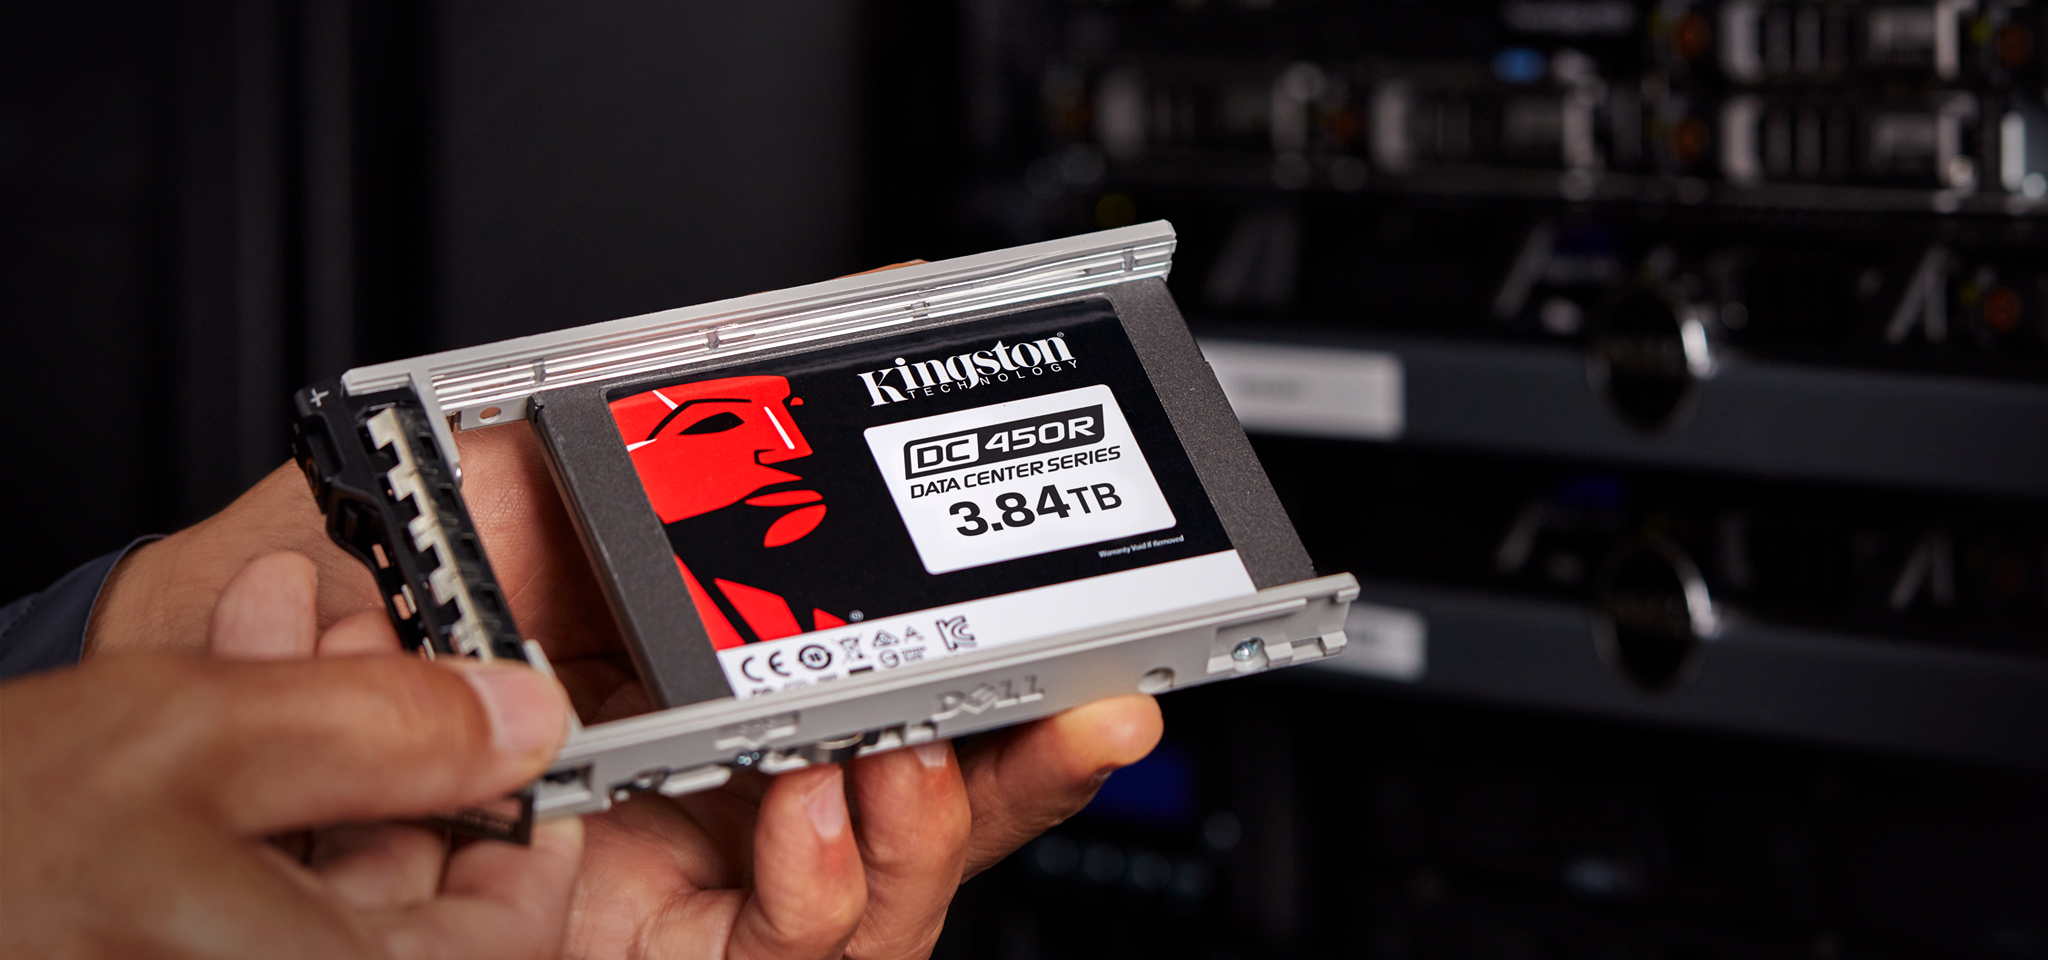 Kingston ra mắt SSD Data Center 450R có tốc độ đọc và ghi cao, dành cho đối tượng doanh nghiệp